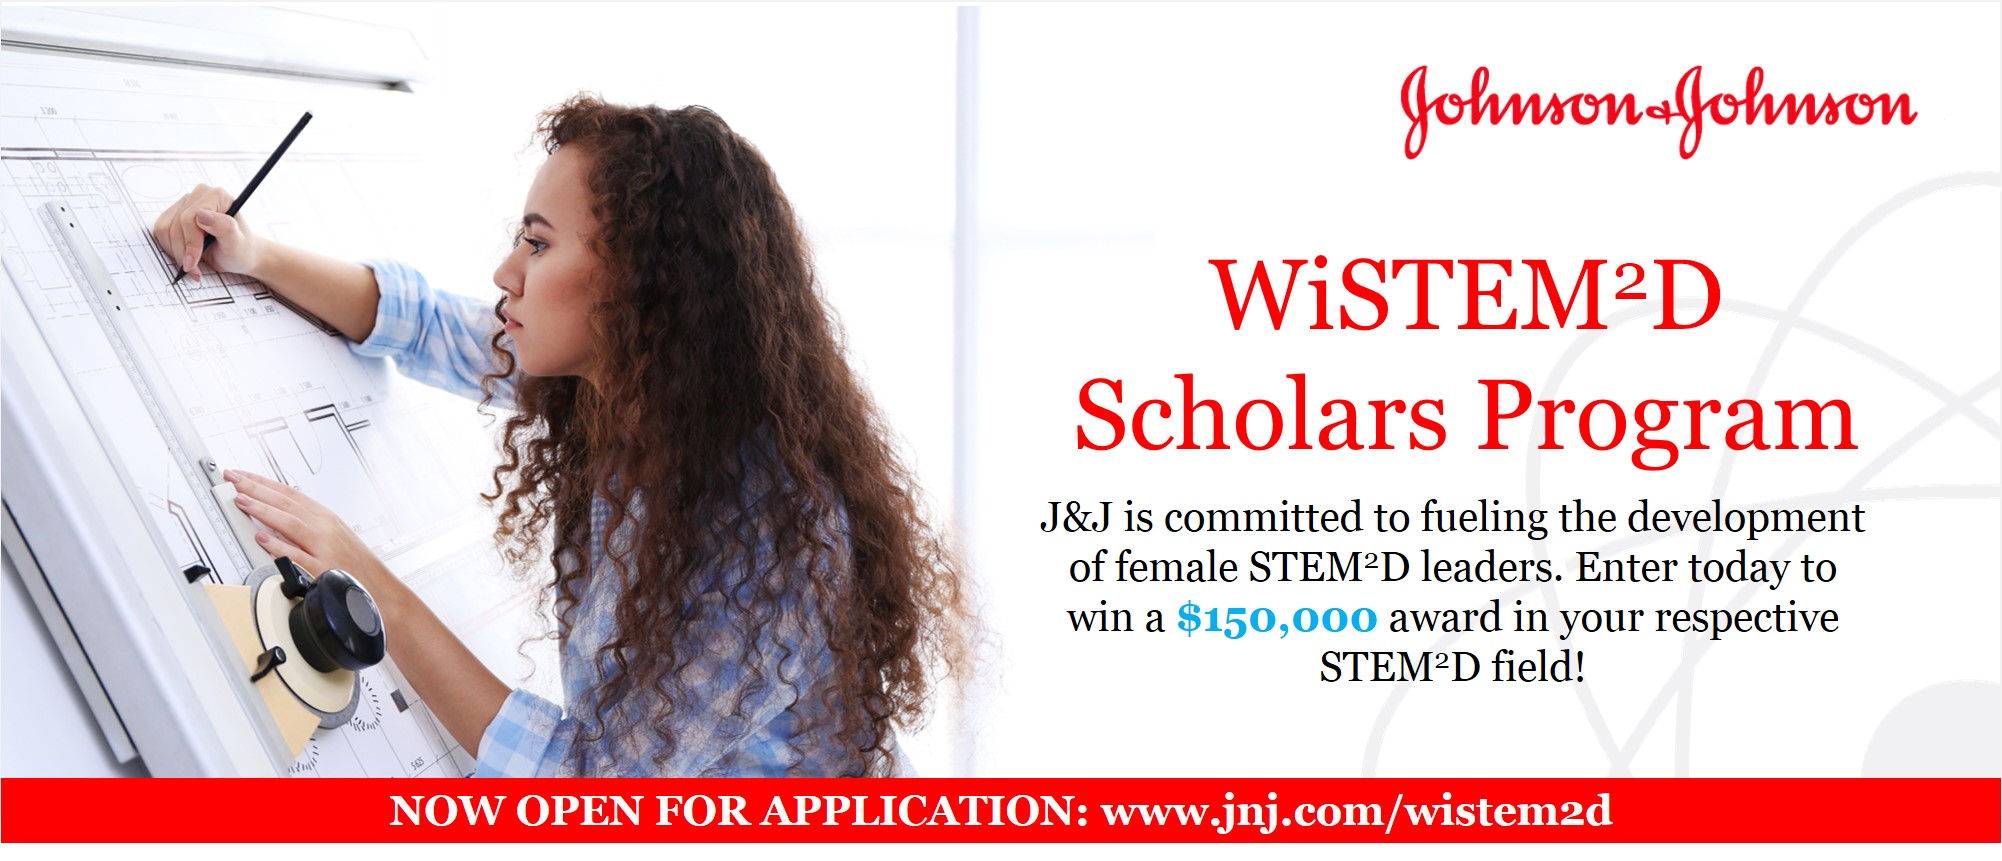 Johnson & Johnson Women in STEM²D Scholars Program 2018 (Worth $150,000)